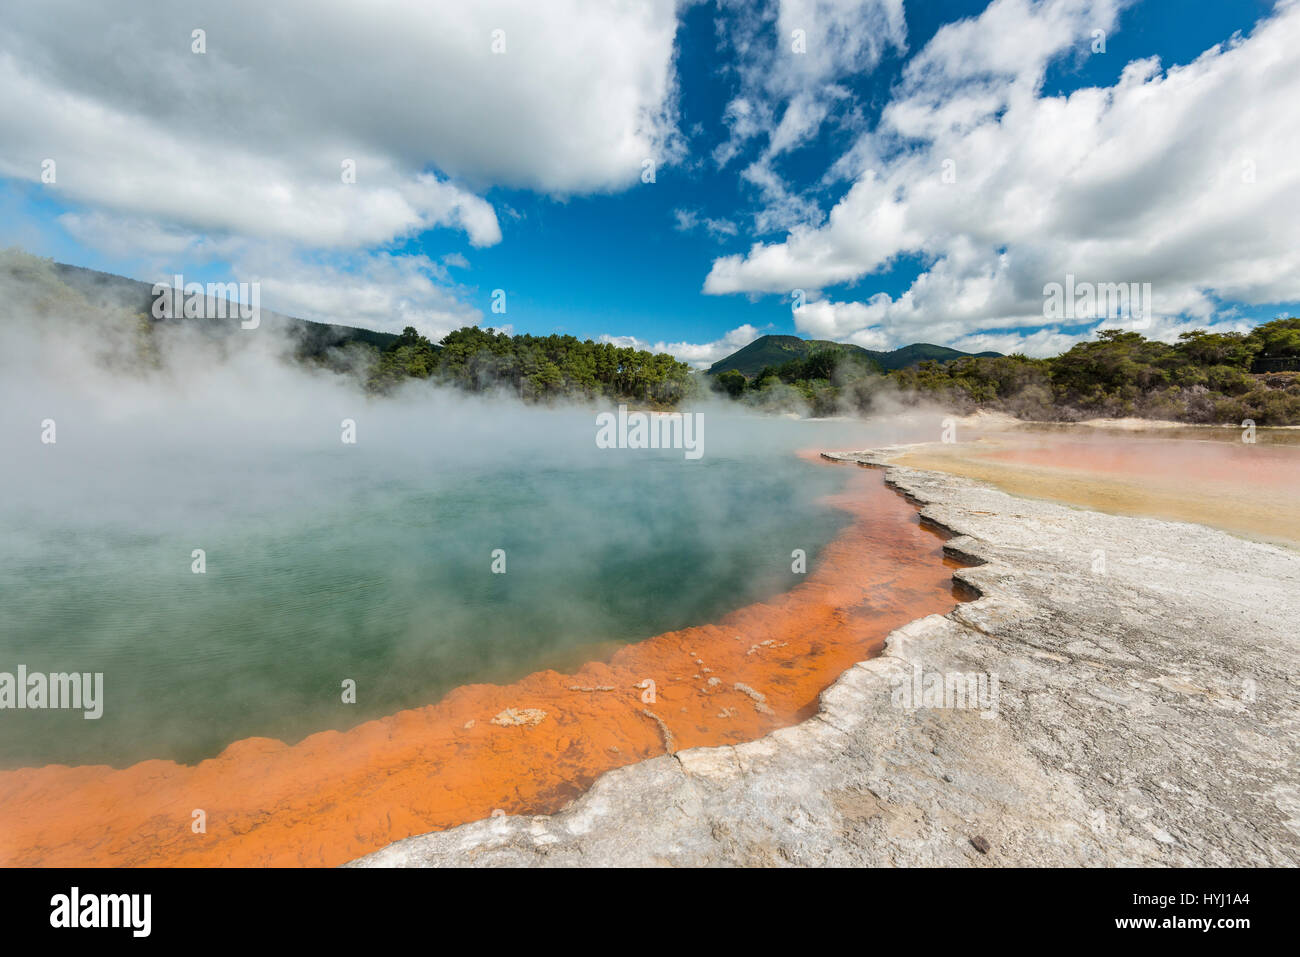 Champagne Pool, hot thermal spring, Waiotapu, Waiotapu, Roturoa, North Island, New Zealand Stock Photo